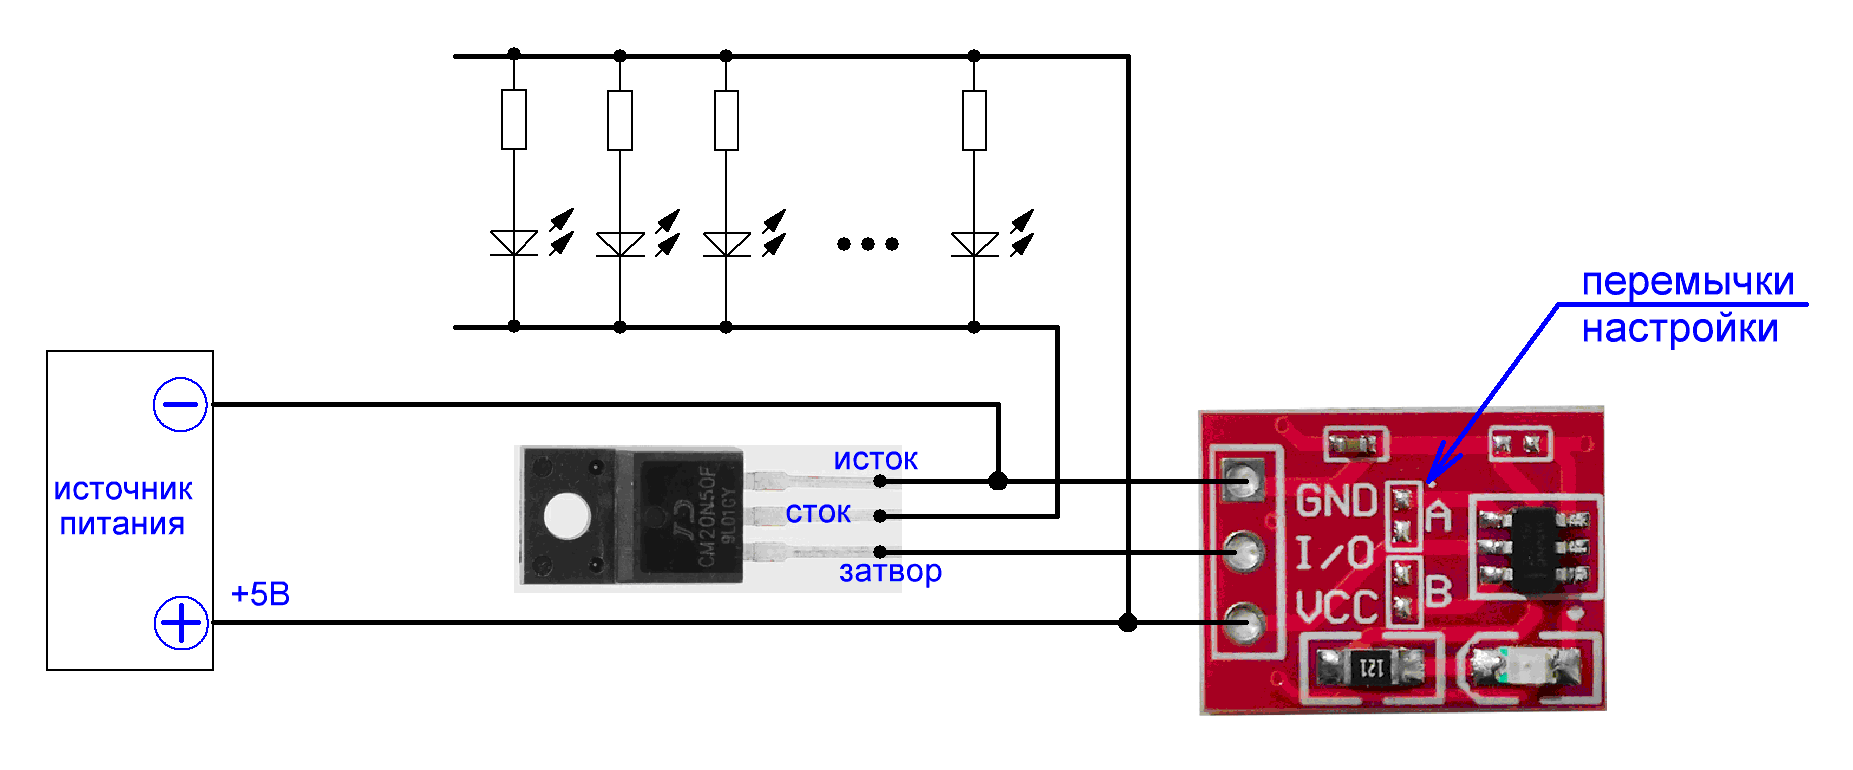 Радиоконструктор 066 - Сенсорный блок управления